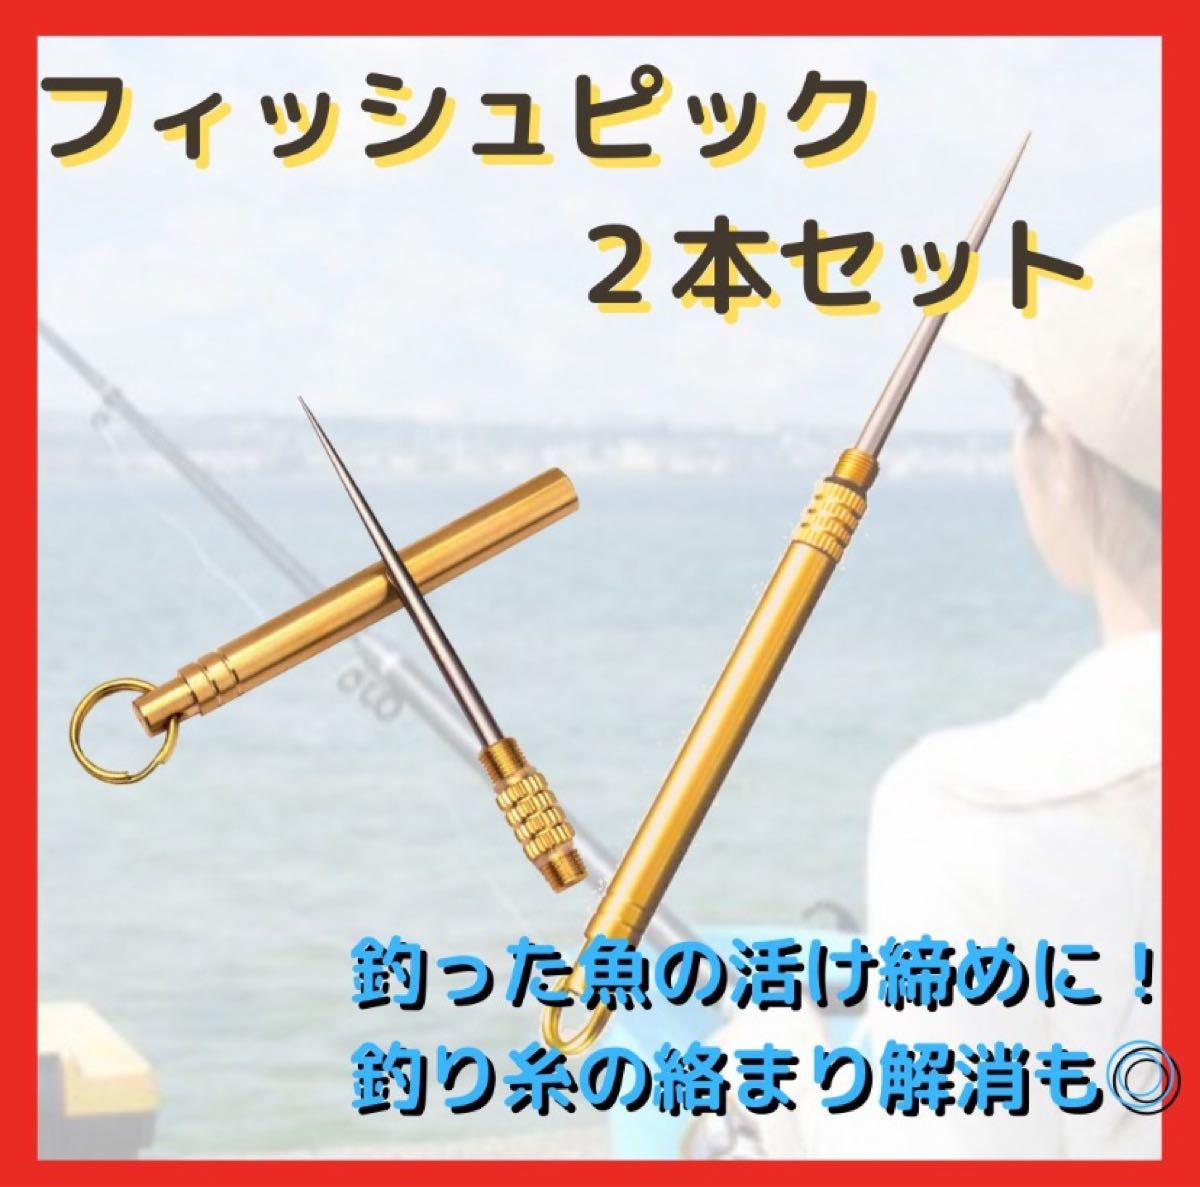 フィッシュピック 釣り 活け締め 魚 釣具 糸ほぐし チタン合金 ゴールド 通販